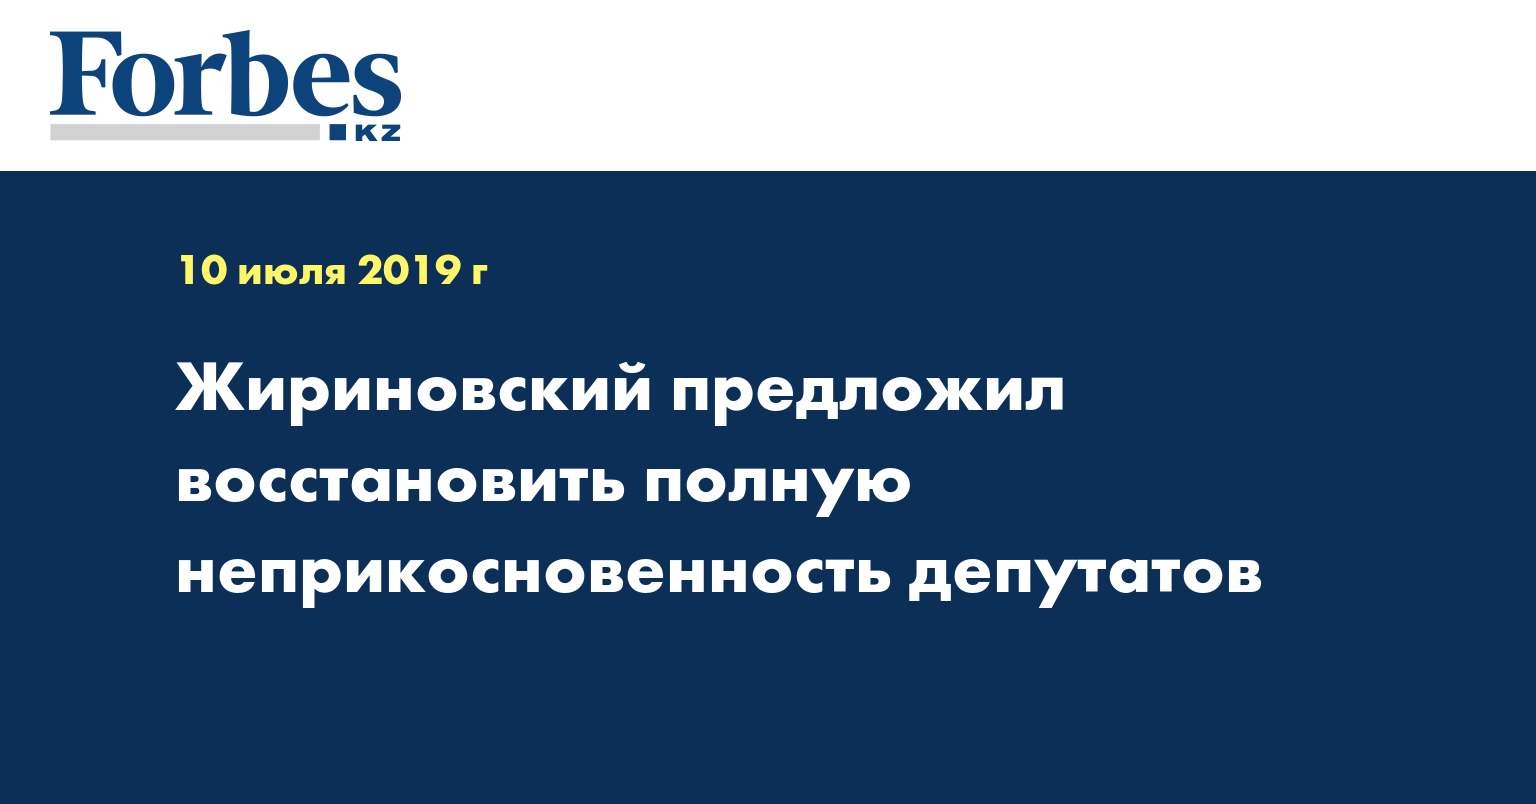 Жириновский предложил восстановить полную неприкосновенность депутатов